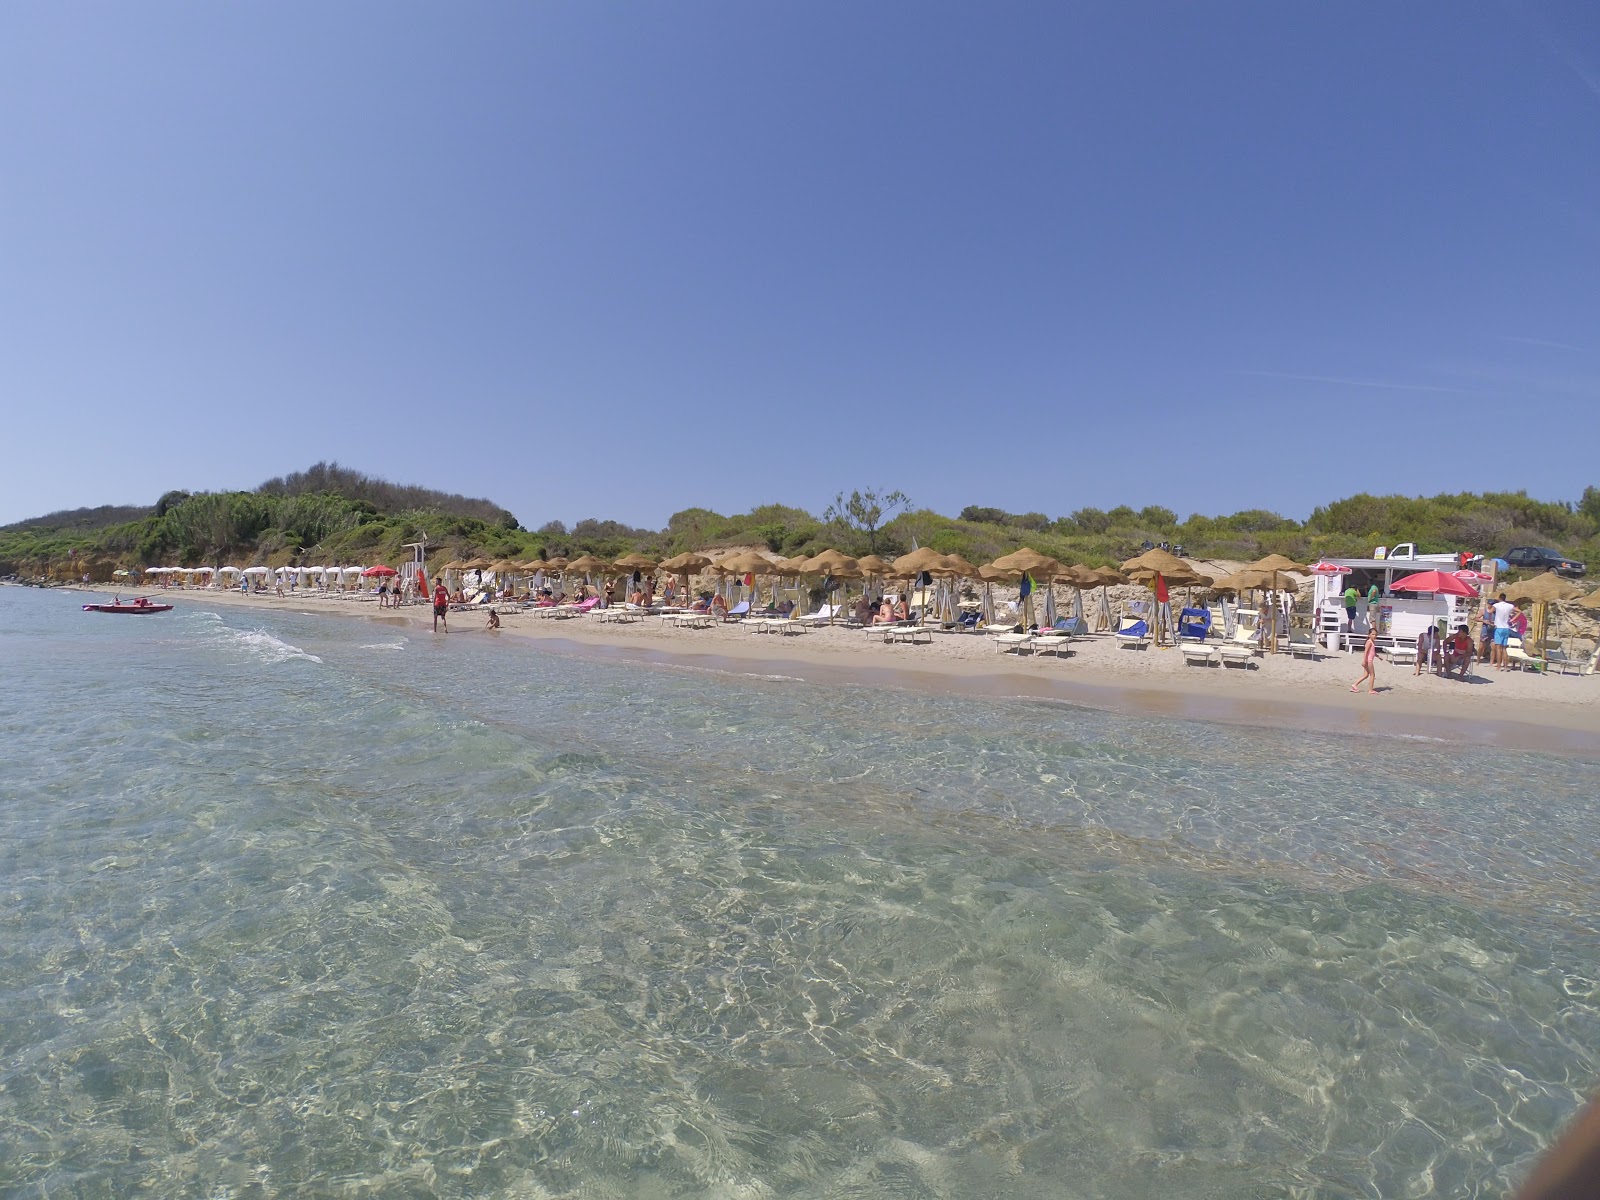 Foto de Spiaggia Alimini - lugar popular entre los conocedores del relax